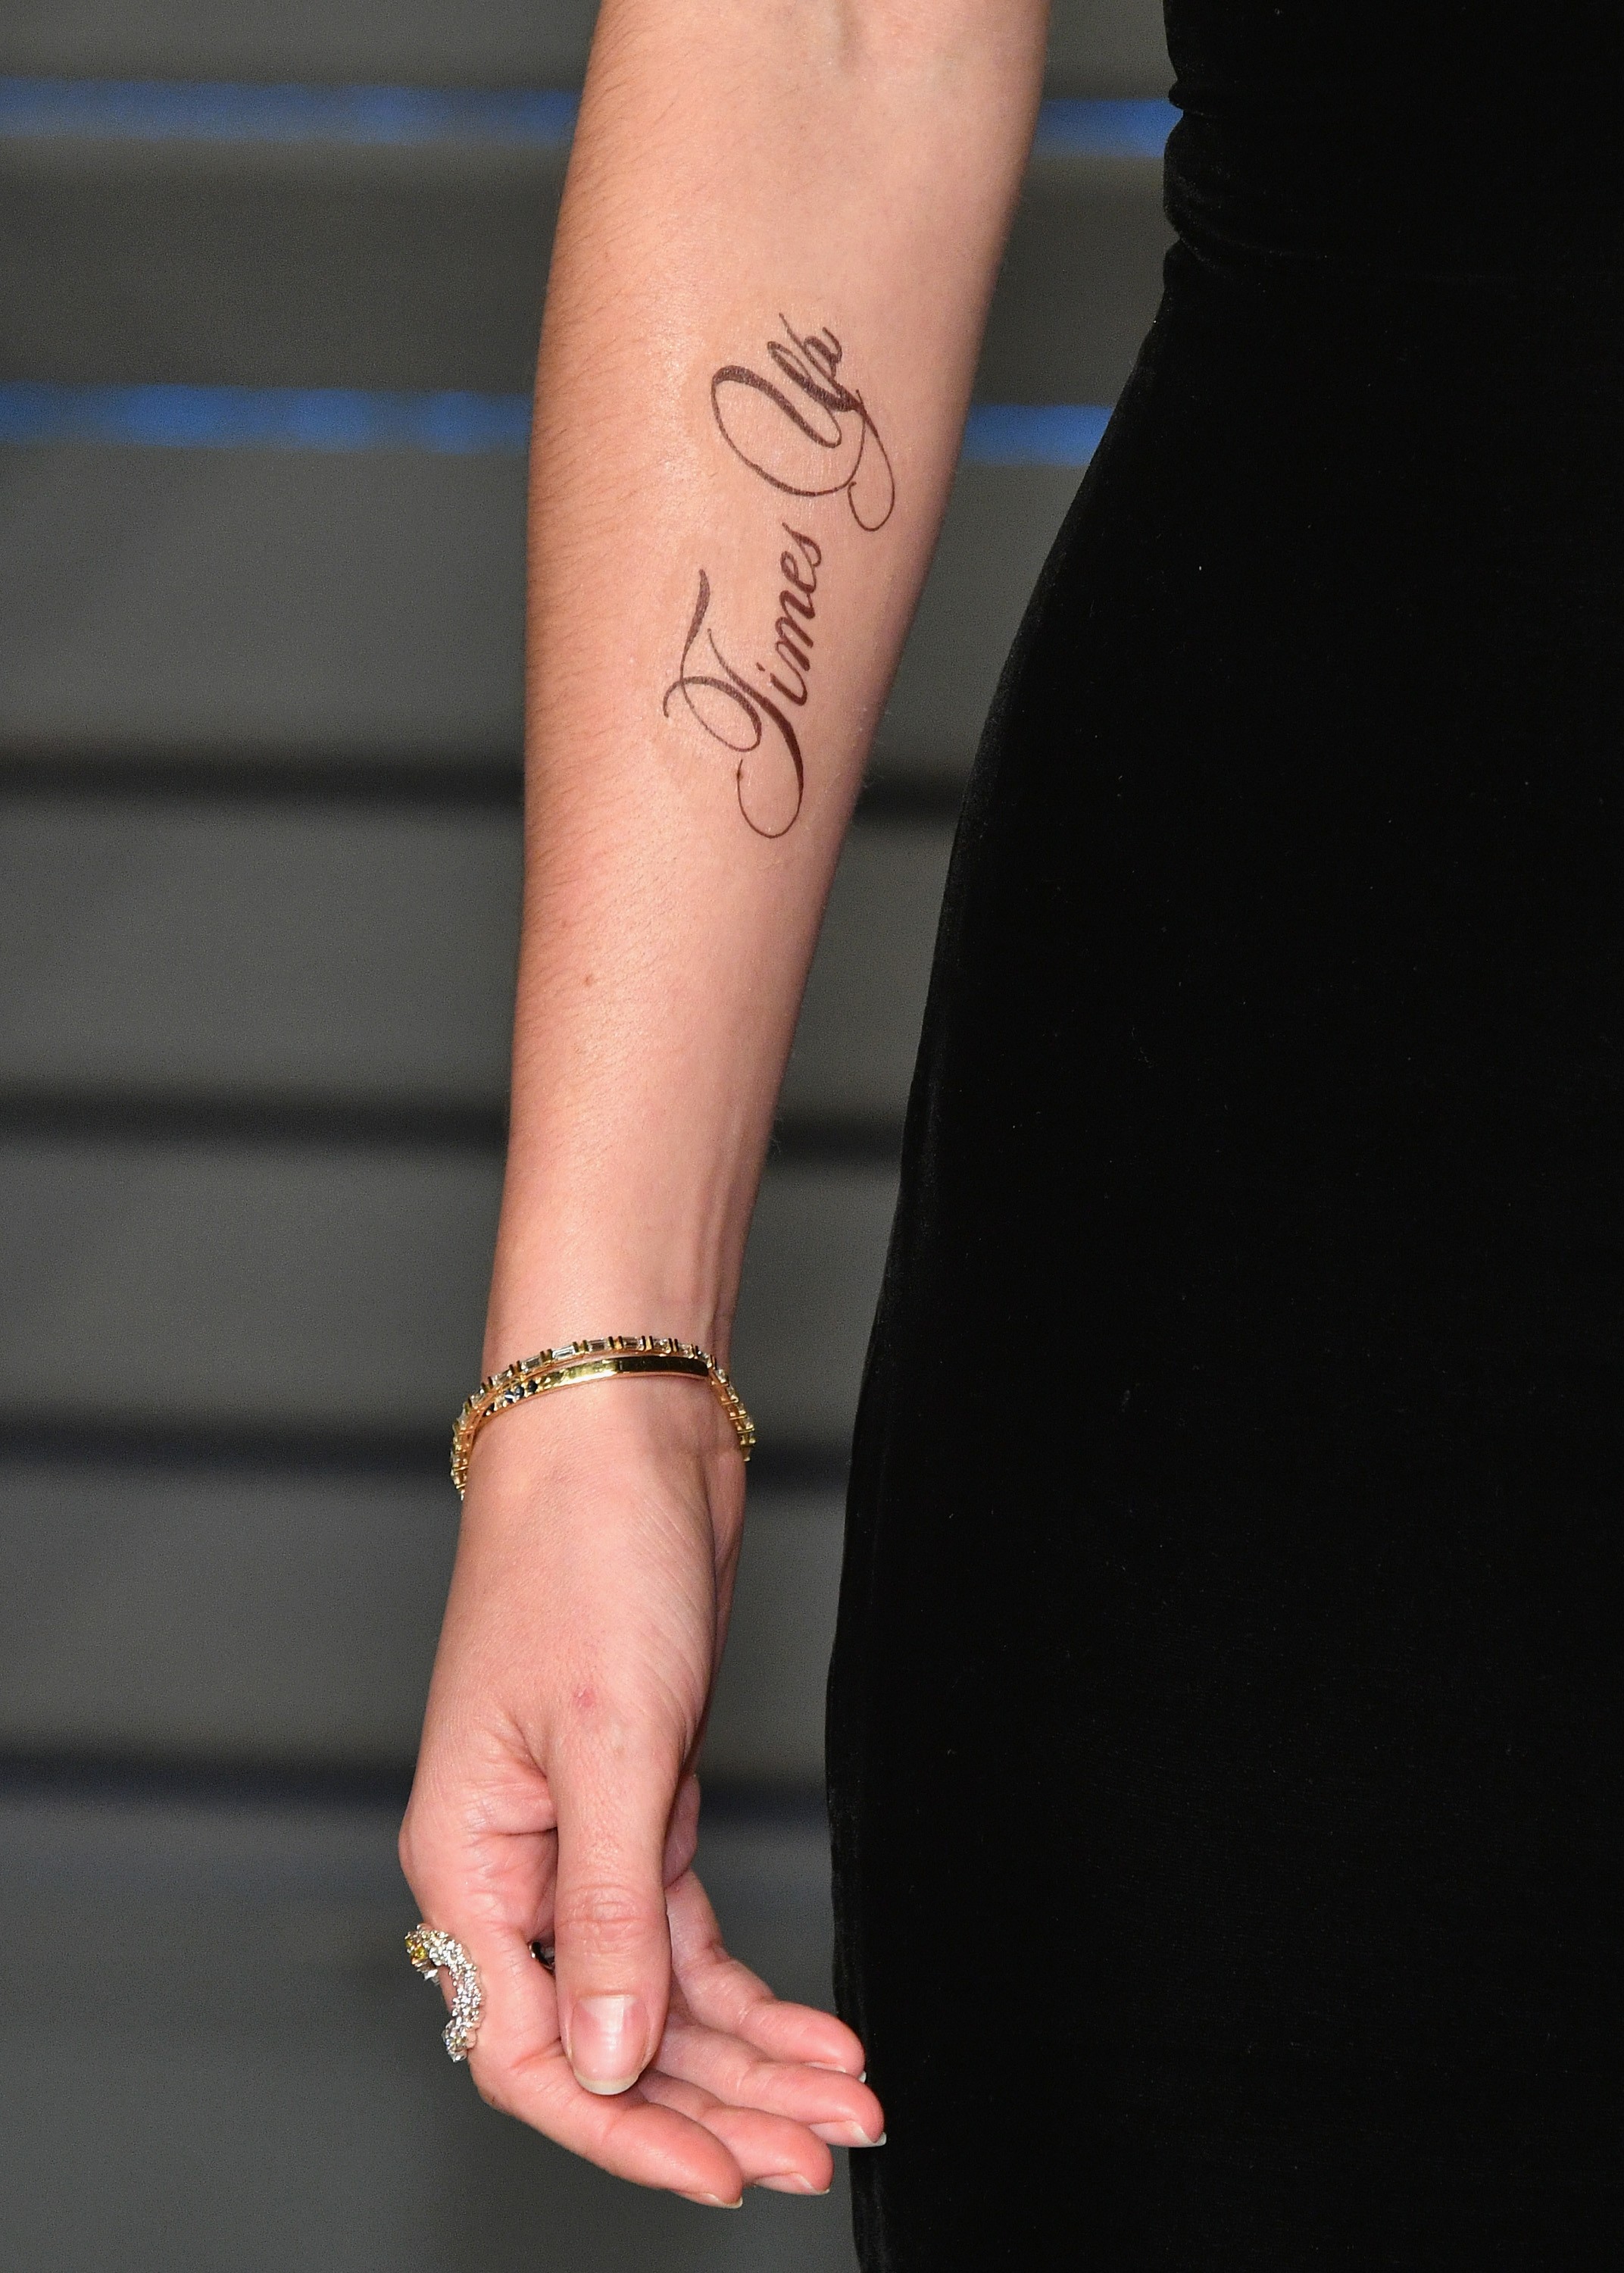 A tatuagem com a grafia errada no braço da atriz Emma Watson (Foto: Getty Images)